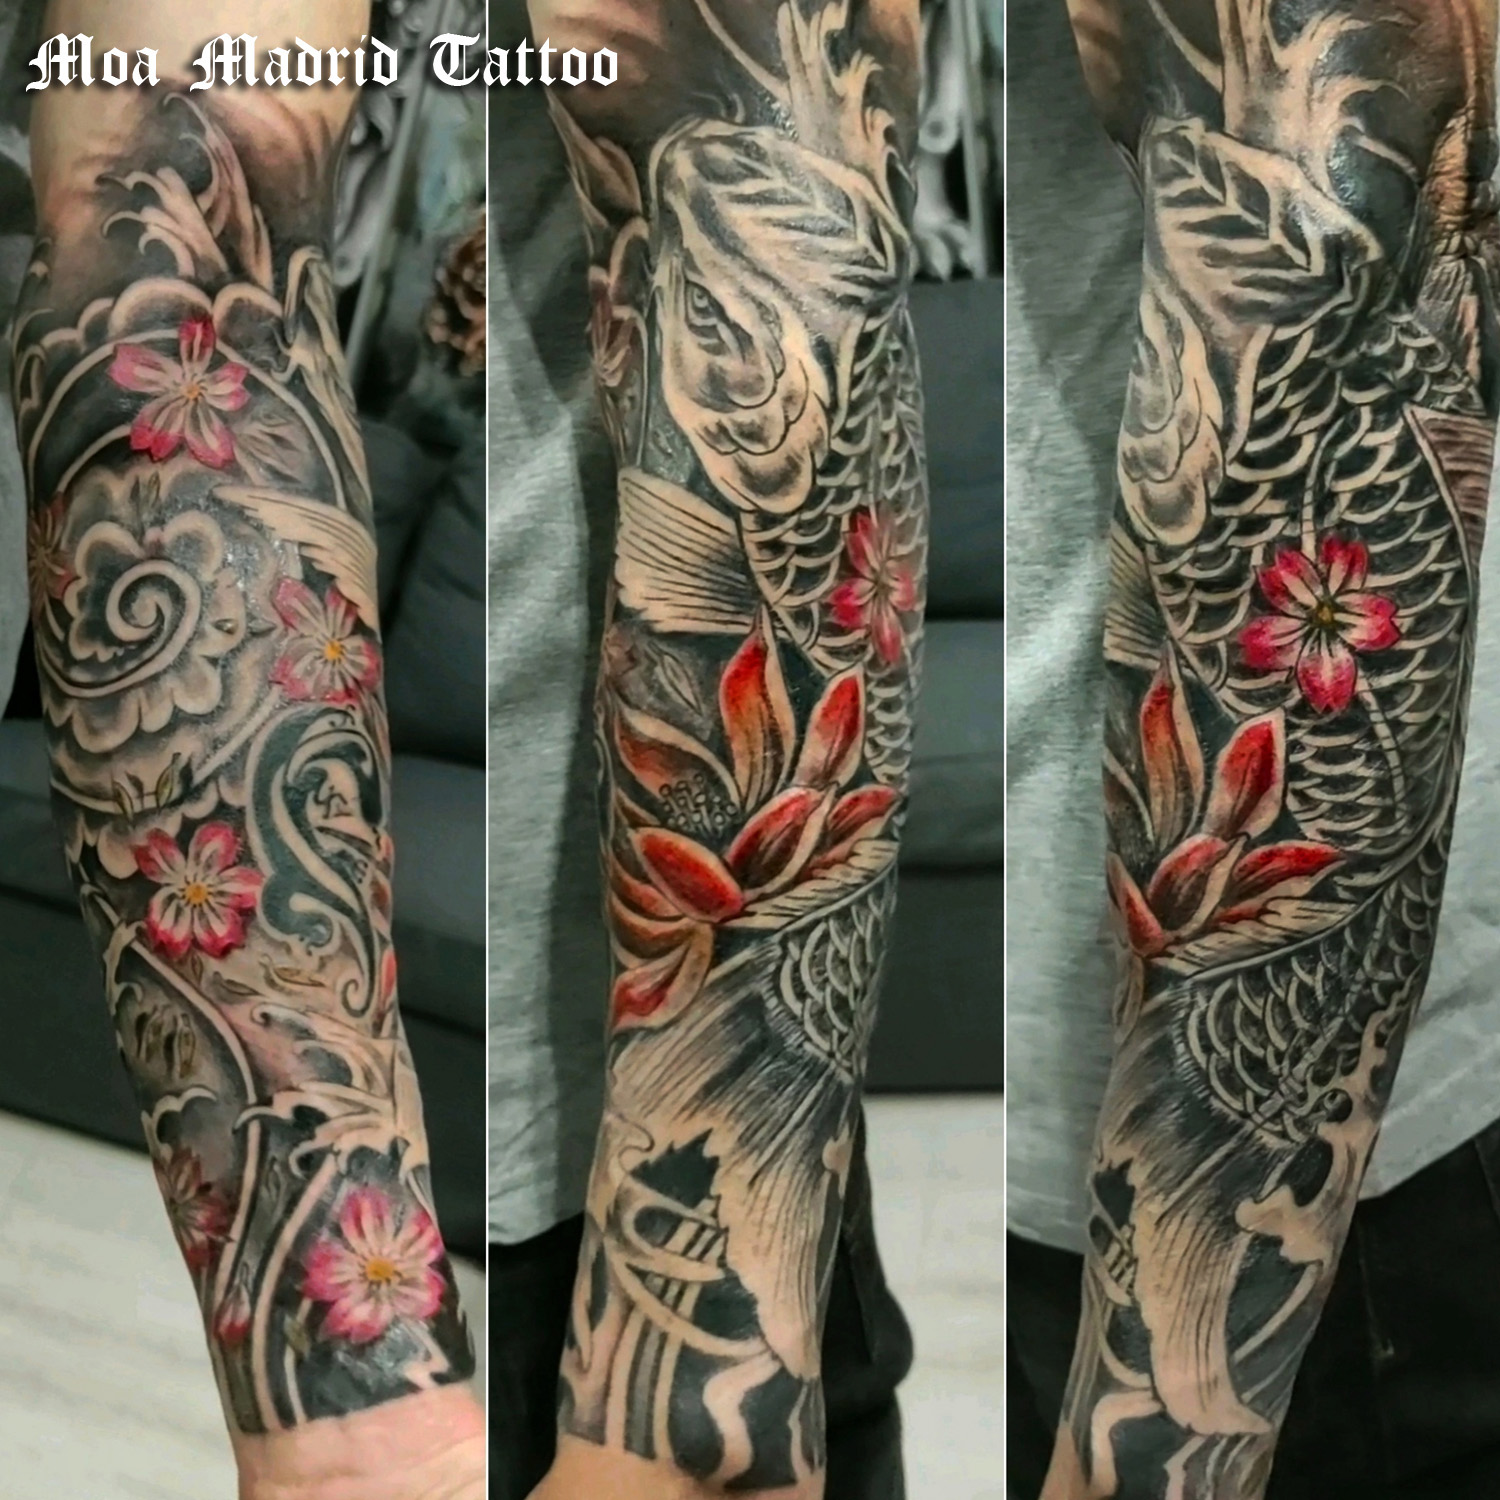 Tatuaje oriental con carpa koi, remolinos de agua y flores rodeando el antebrazo